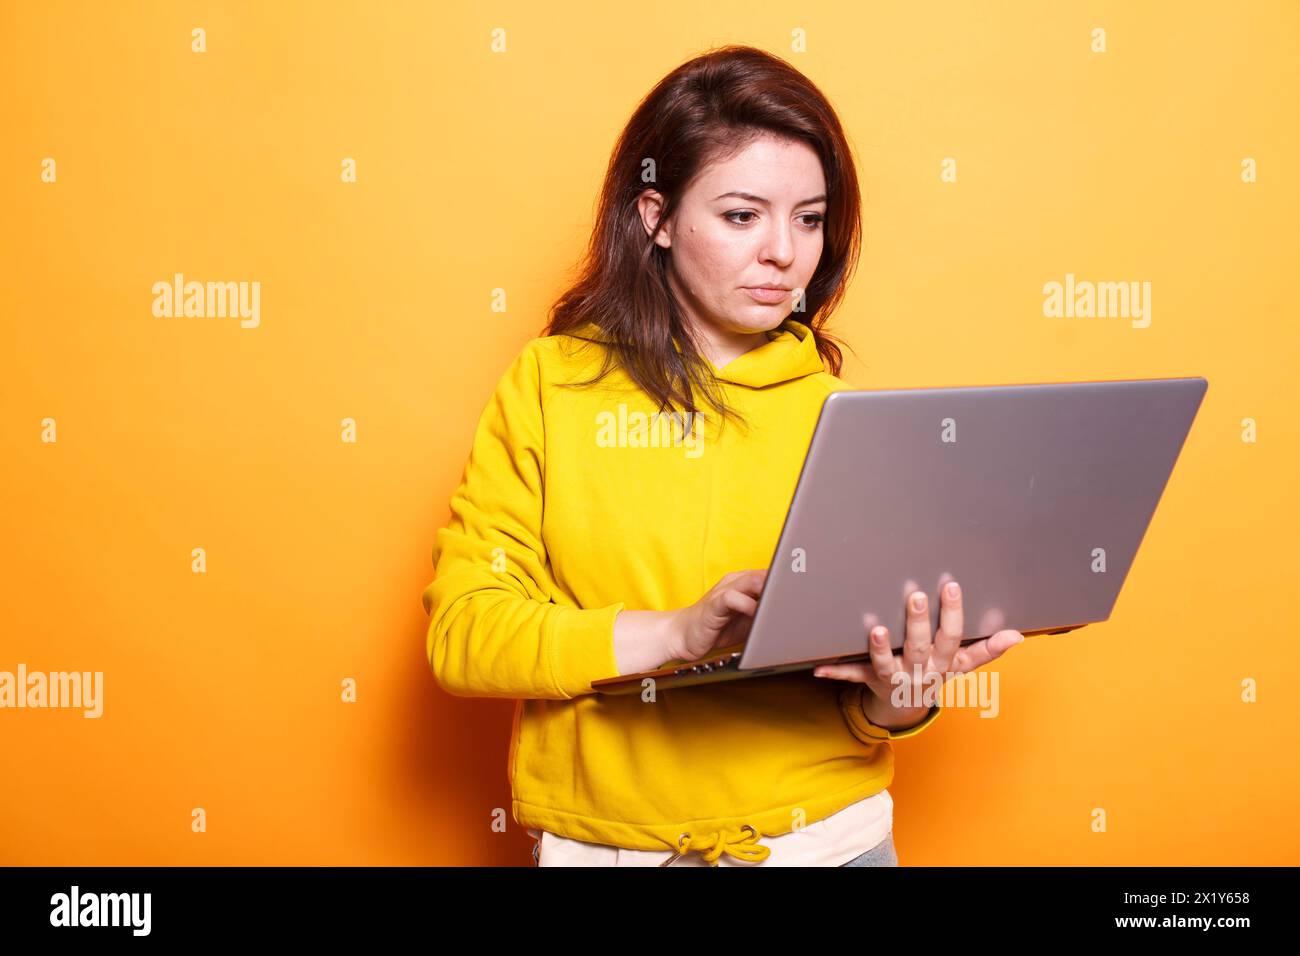 Freiberuflich tätige Frau, die moderne Technologie nutzt, indem sie digitale Laptops nutzt. Porträt einer fokussierten Frau, die online auf einem drahtlosen Computer arbeitet, während sie über einem isolierten orangefarbenen Hintergrund steht. Stockfoto